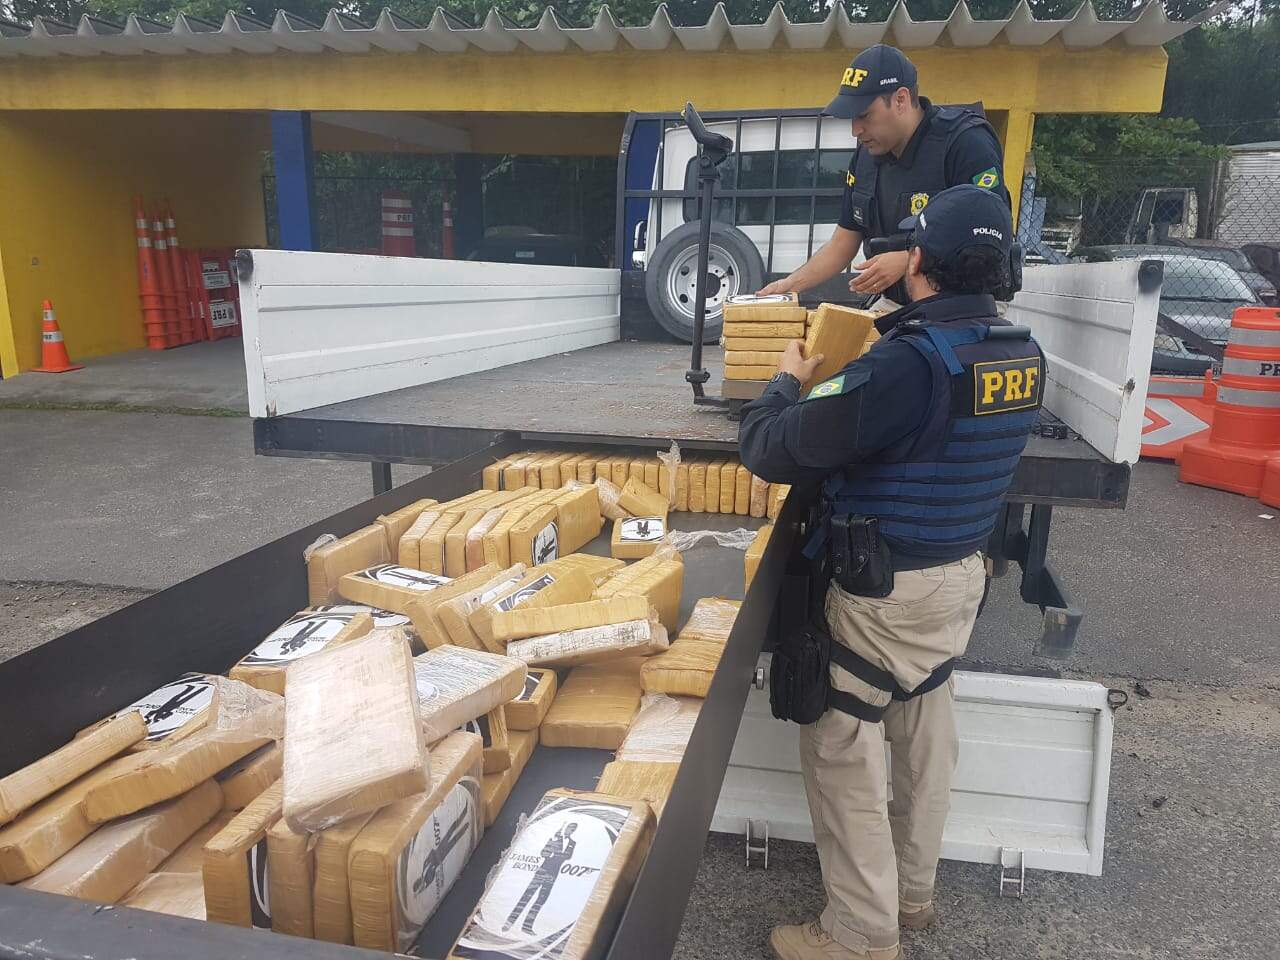 Cocaína estava escondida em fundo falso de caminhão com placas de Curitiba